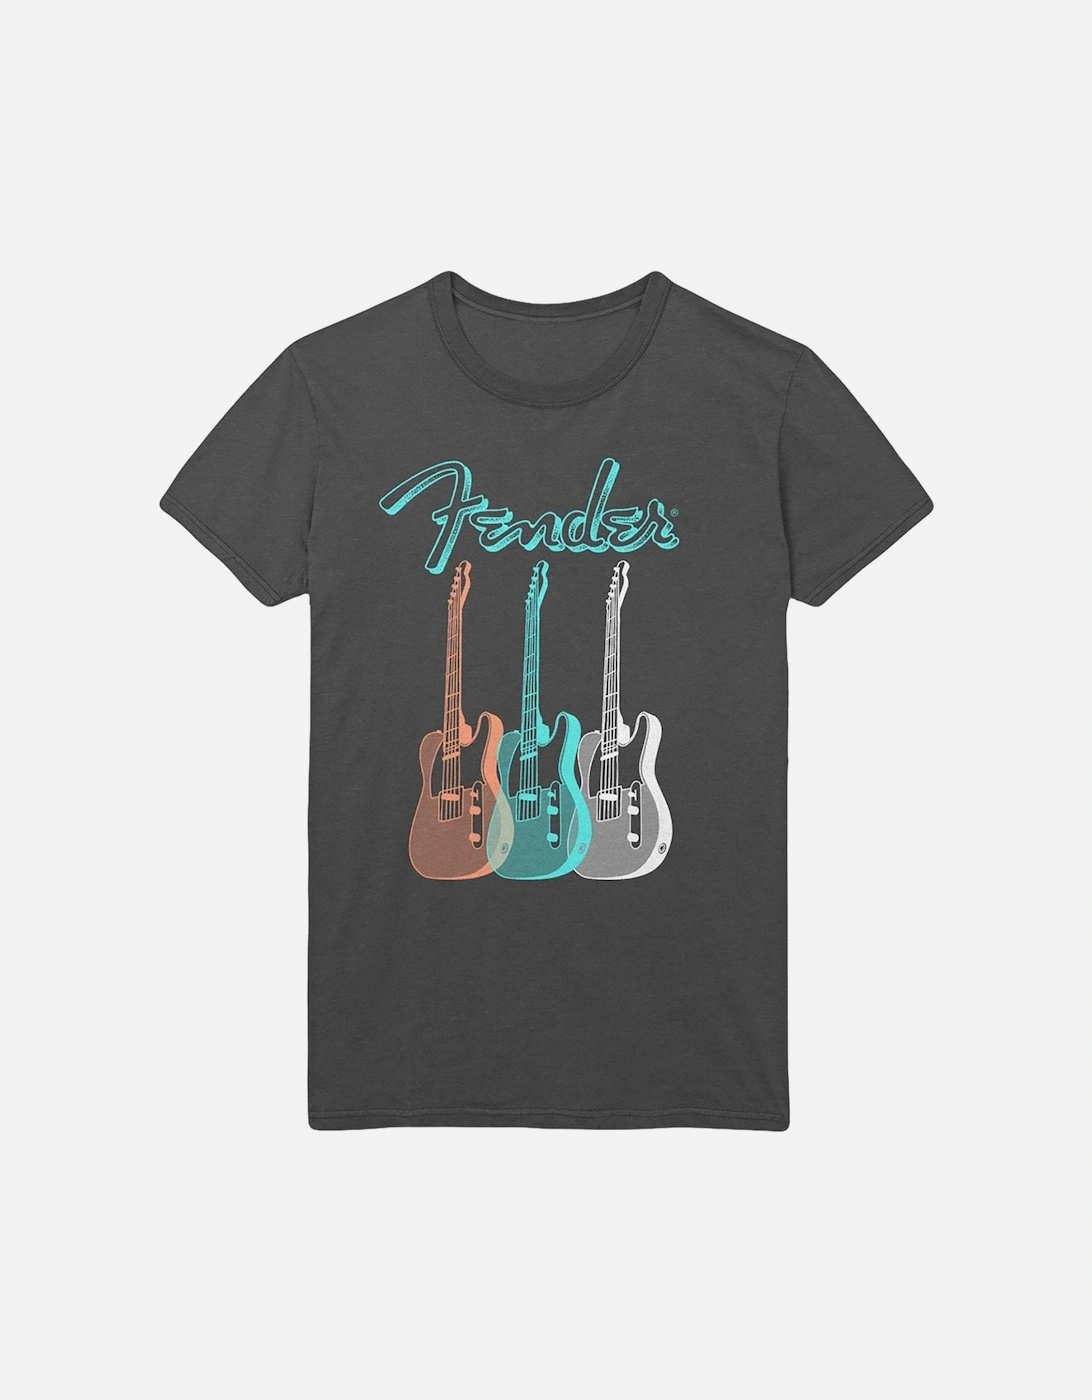 Unisex Adult Triple Guitar Cotton T-Shirt, 2 of 1